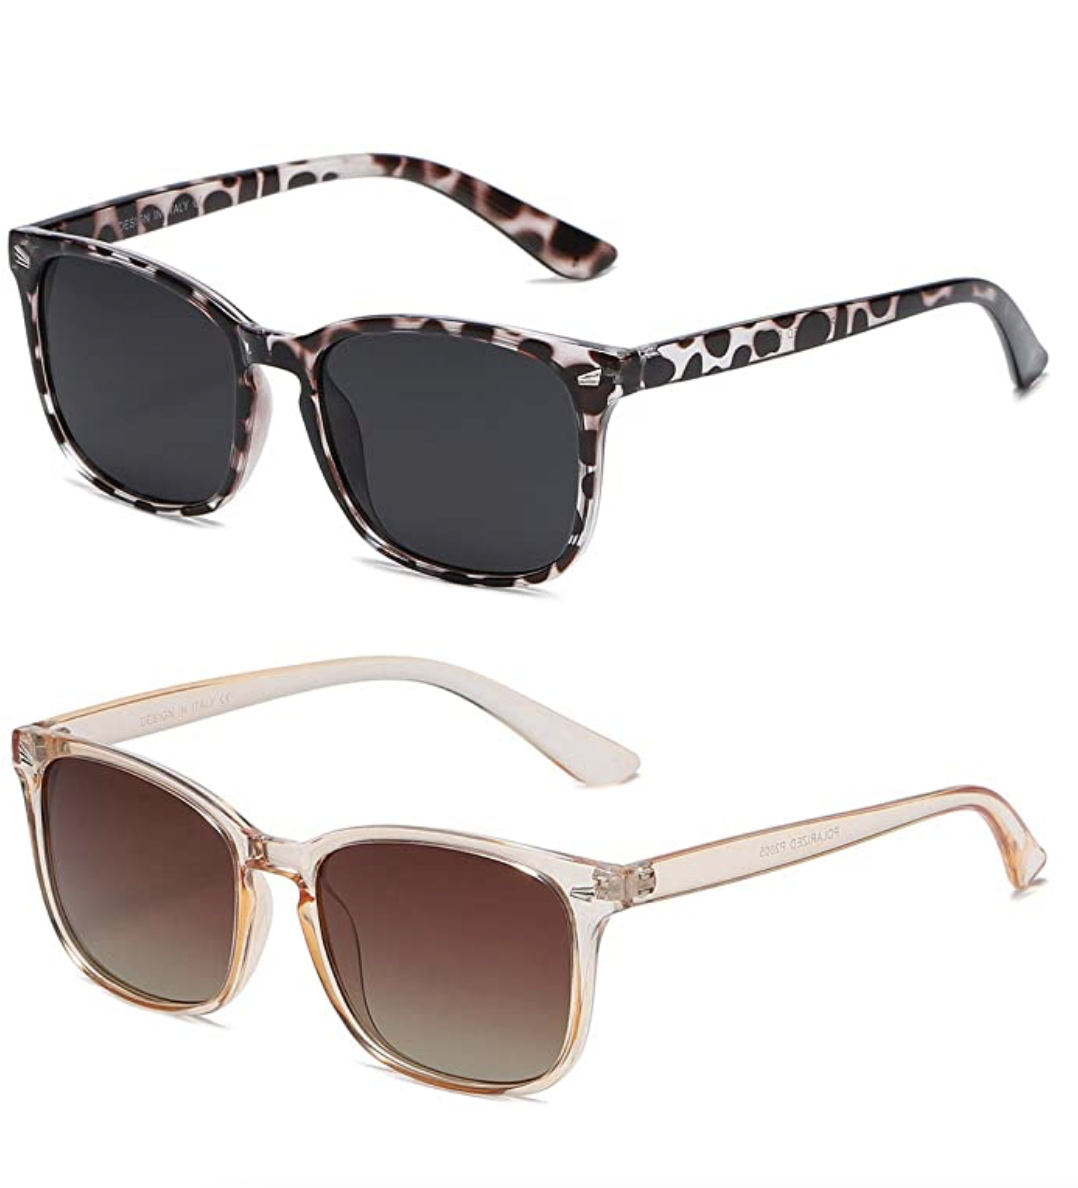 Amazon DUSHINE Polarized Sunglasses for Women Classic Retro Style 100% UV Protection